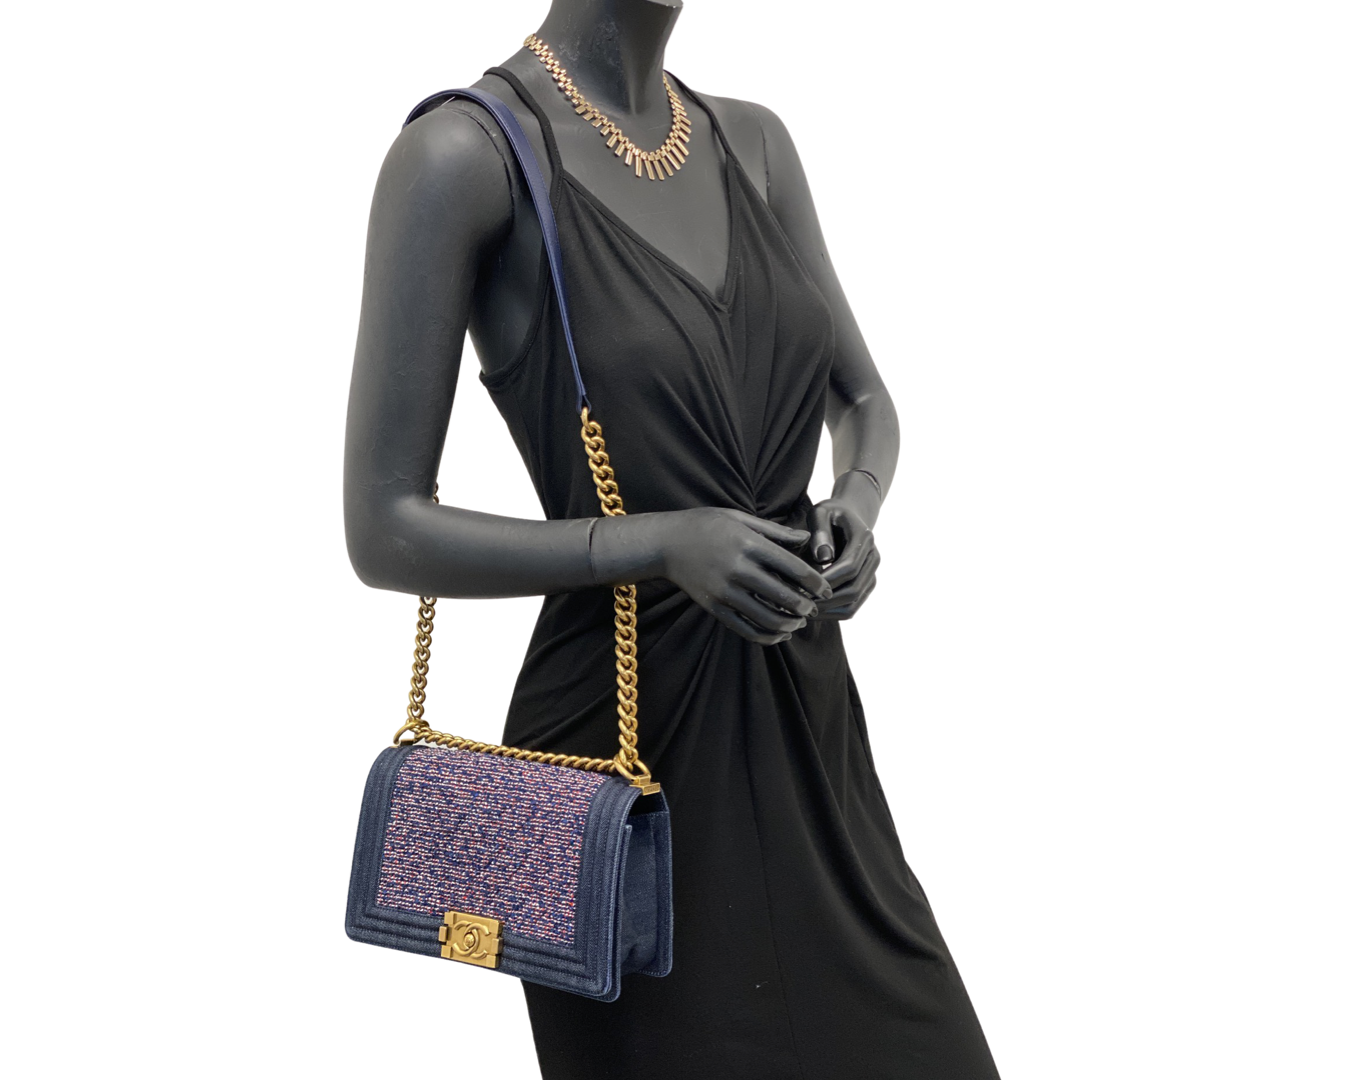 Chanel | Boy Medium Blue Tweed Bag